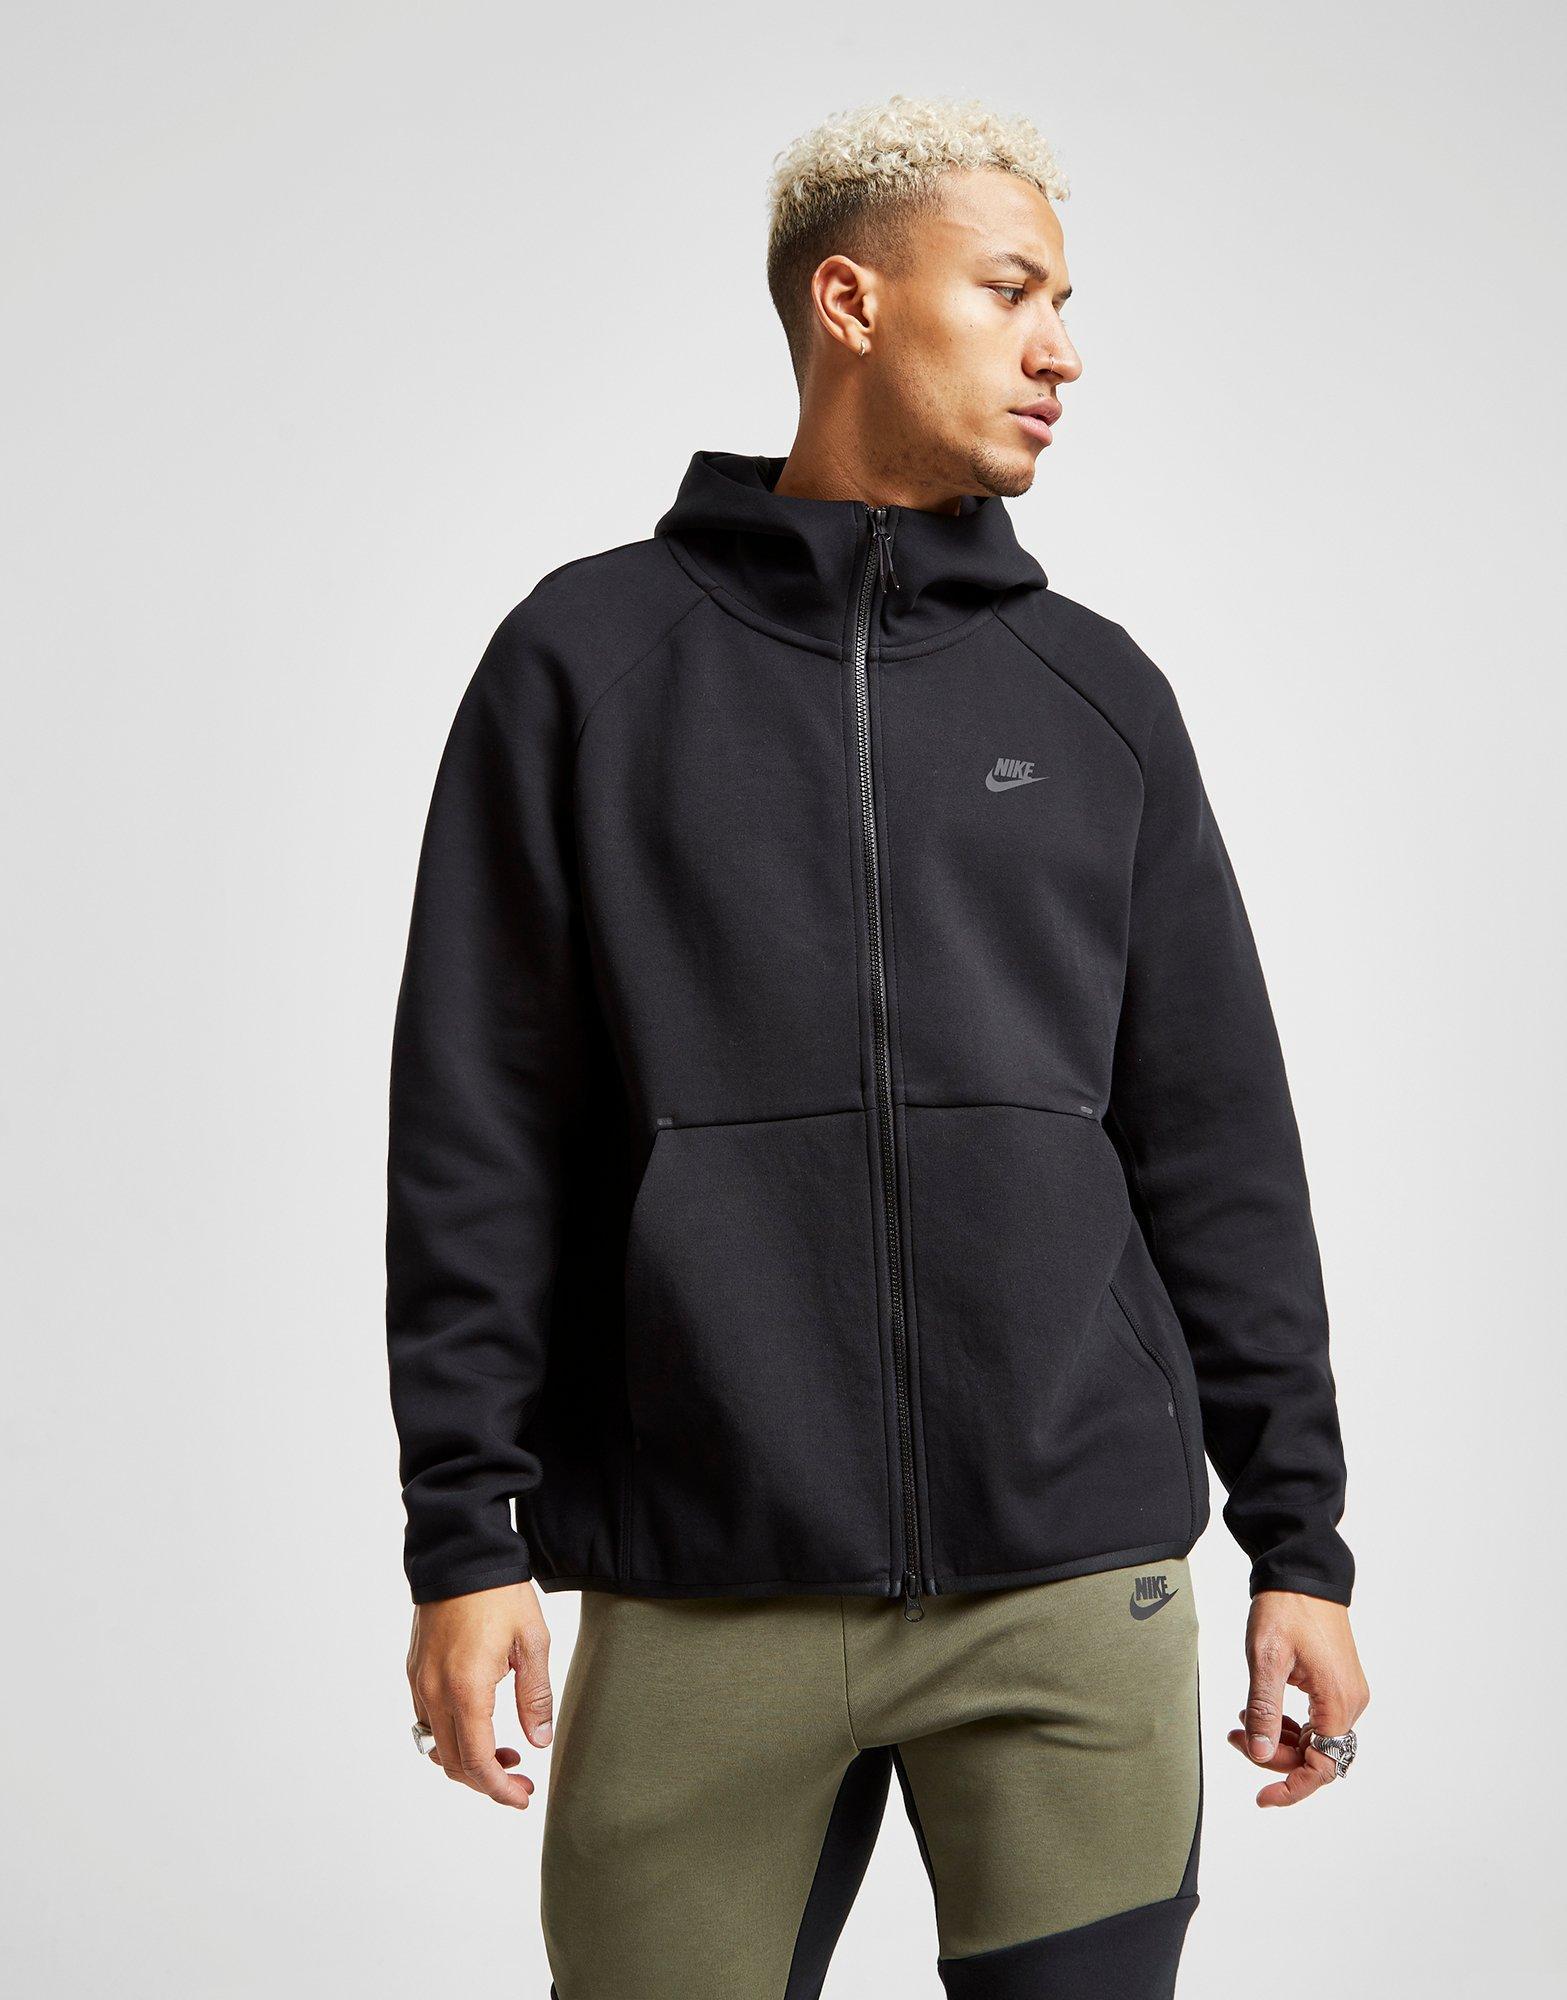 Nike Tech Fleece Windrunner Hoodie in Black/Black (Black) for Men - Lyst